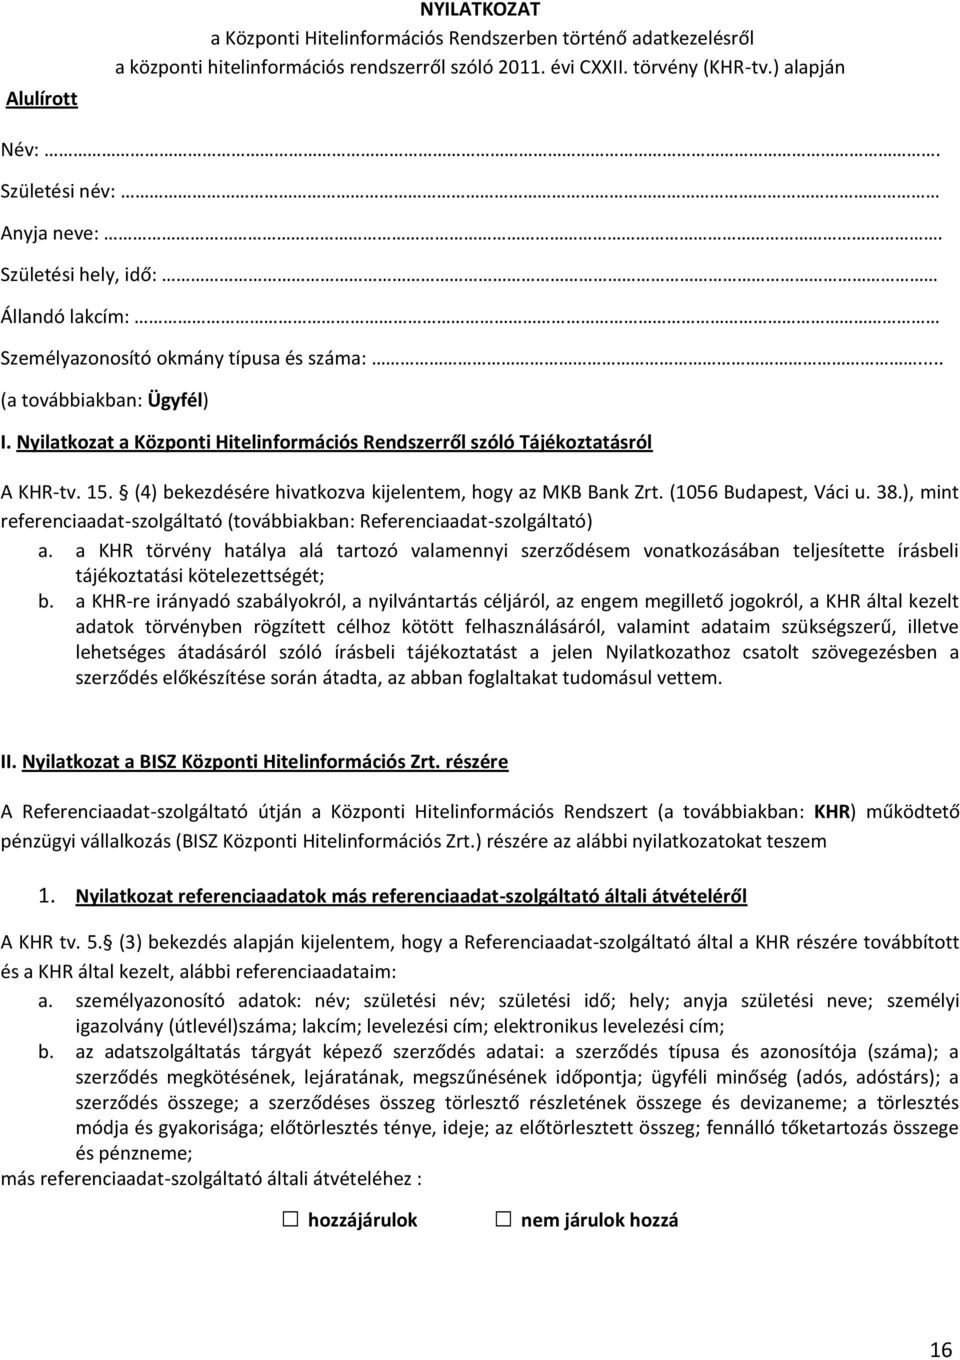 Nyilatkozat a Központi Hitelinformációs Rendszerről szóló Tájékoztatásról A KHR-tv. 15. (4) bekezdésére hivatkozva kijelentem, hogy az MKB Bank Zrt. (1056 Budapest, Váci u. 38.